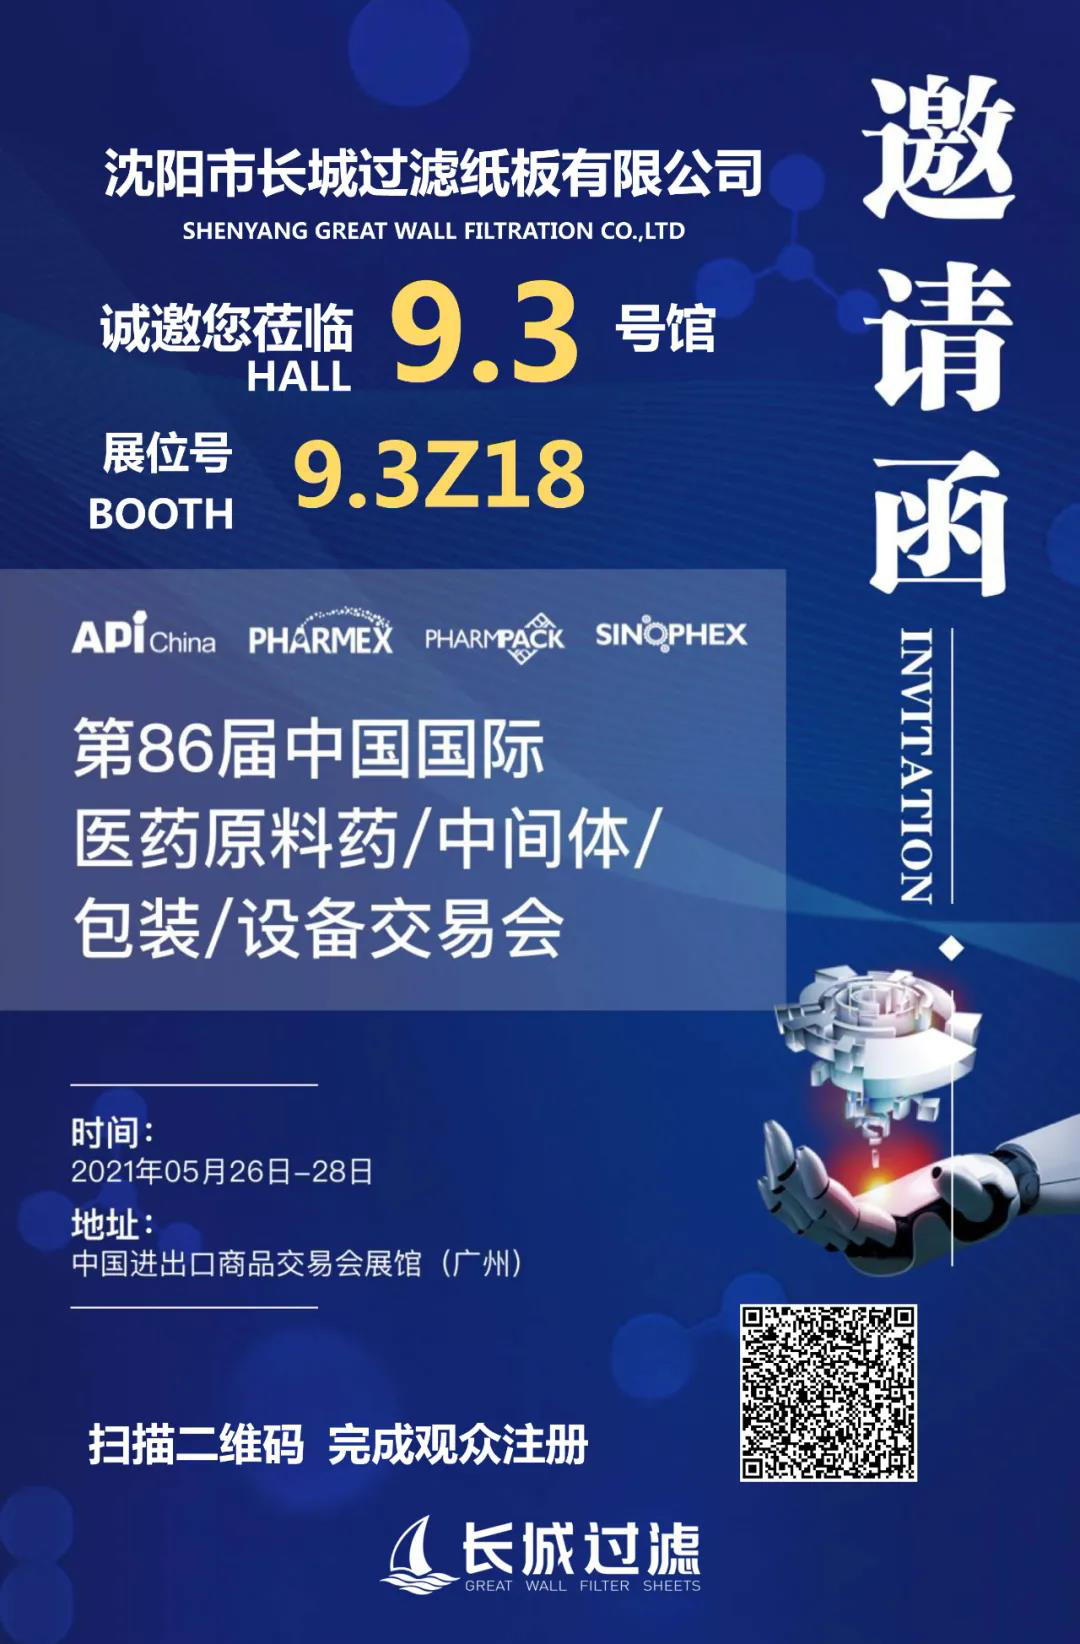 2021 Tuam Tshoj (Guangzhou) API Exhibition Caw